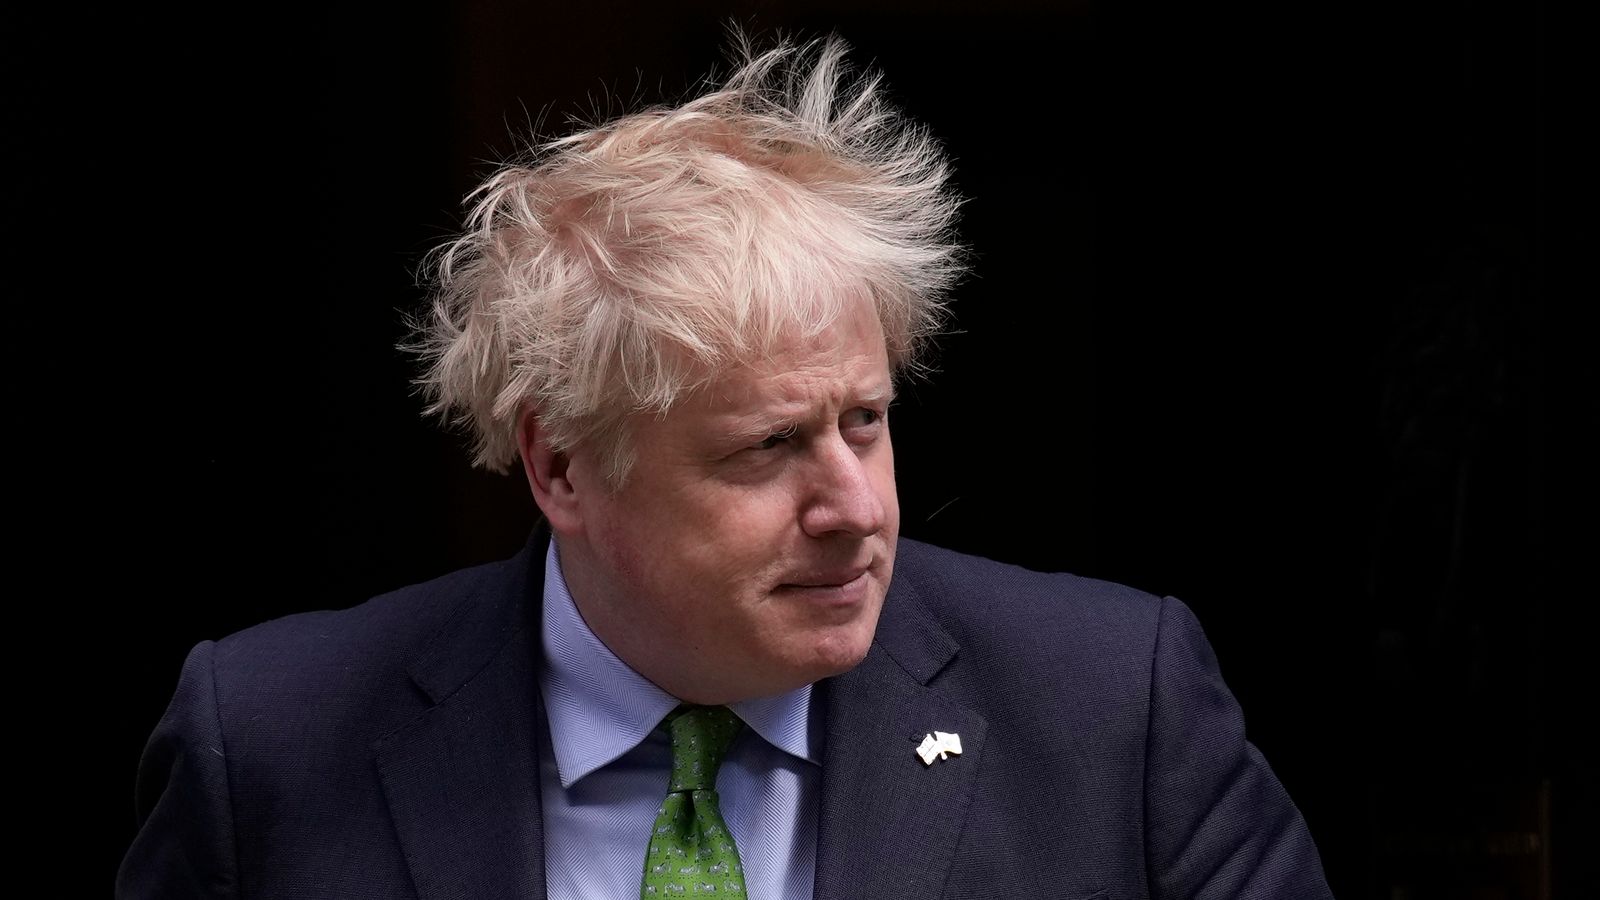 Boris Johnson holds talks in Northern Ireland to try to break Stormont deadlock |  politics news